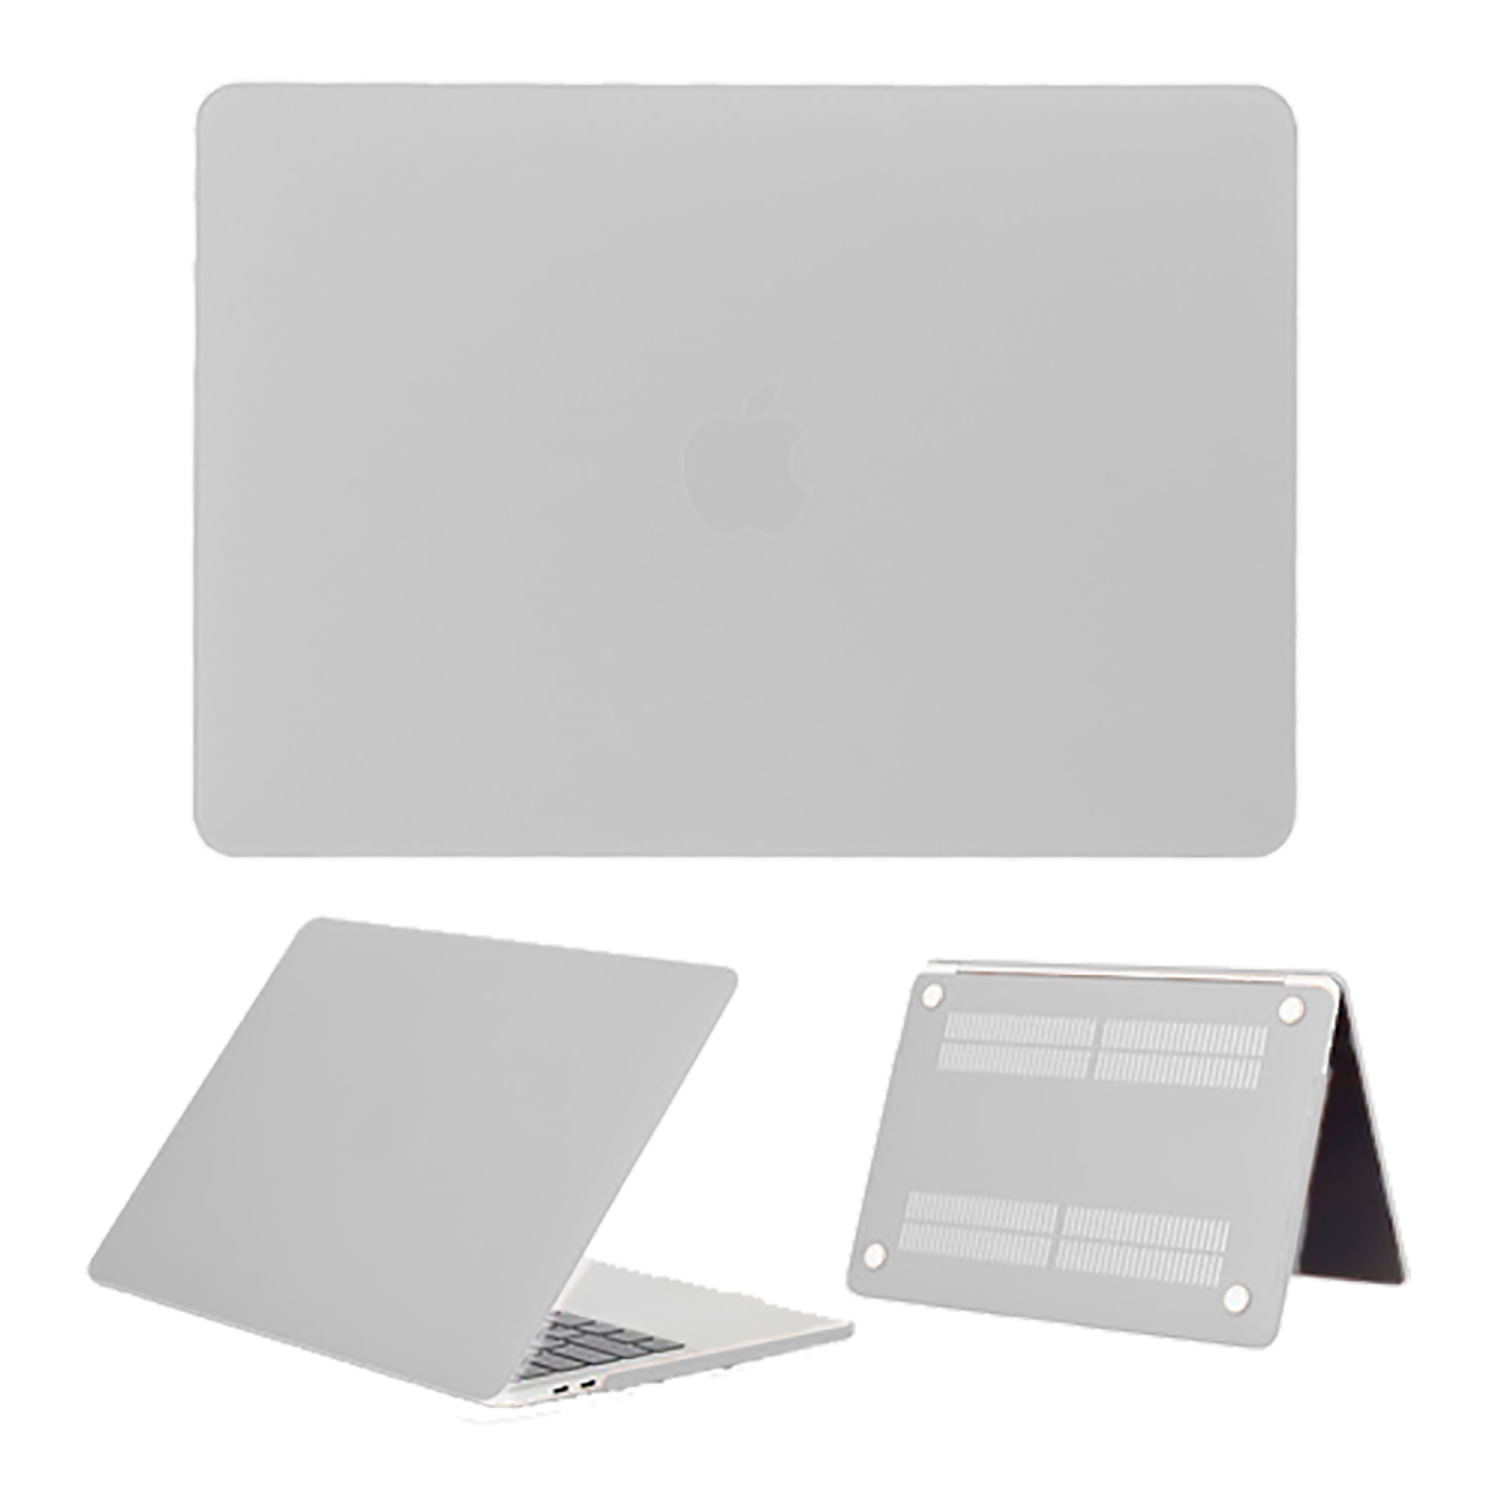 Case Mate Para Macbook Pro Retina 15" A1398 Blanco